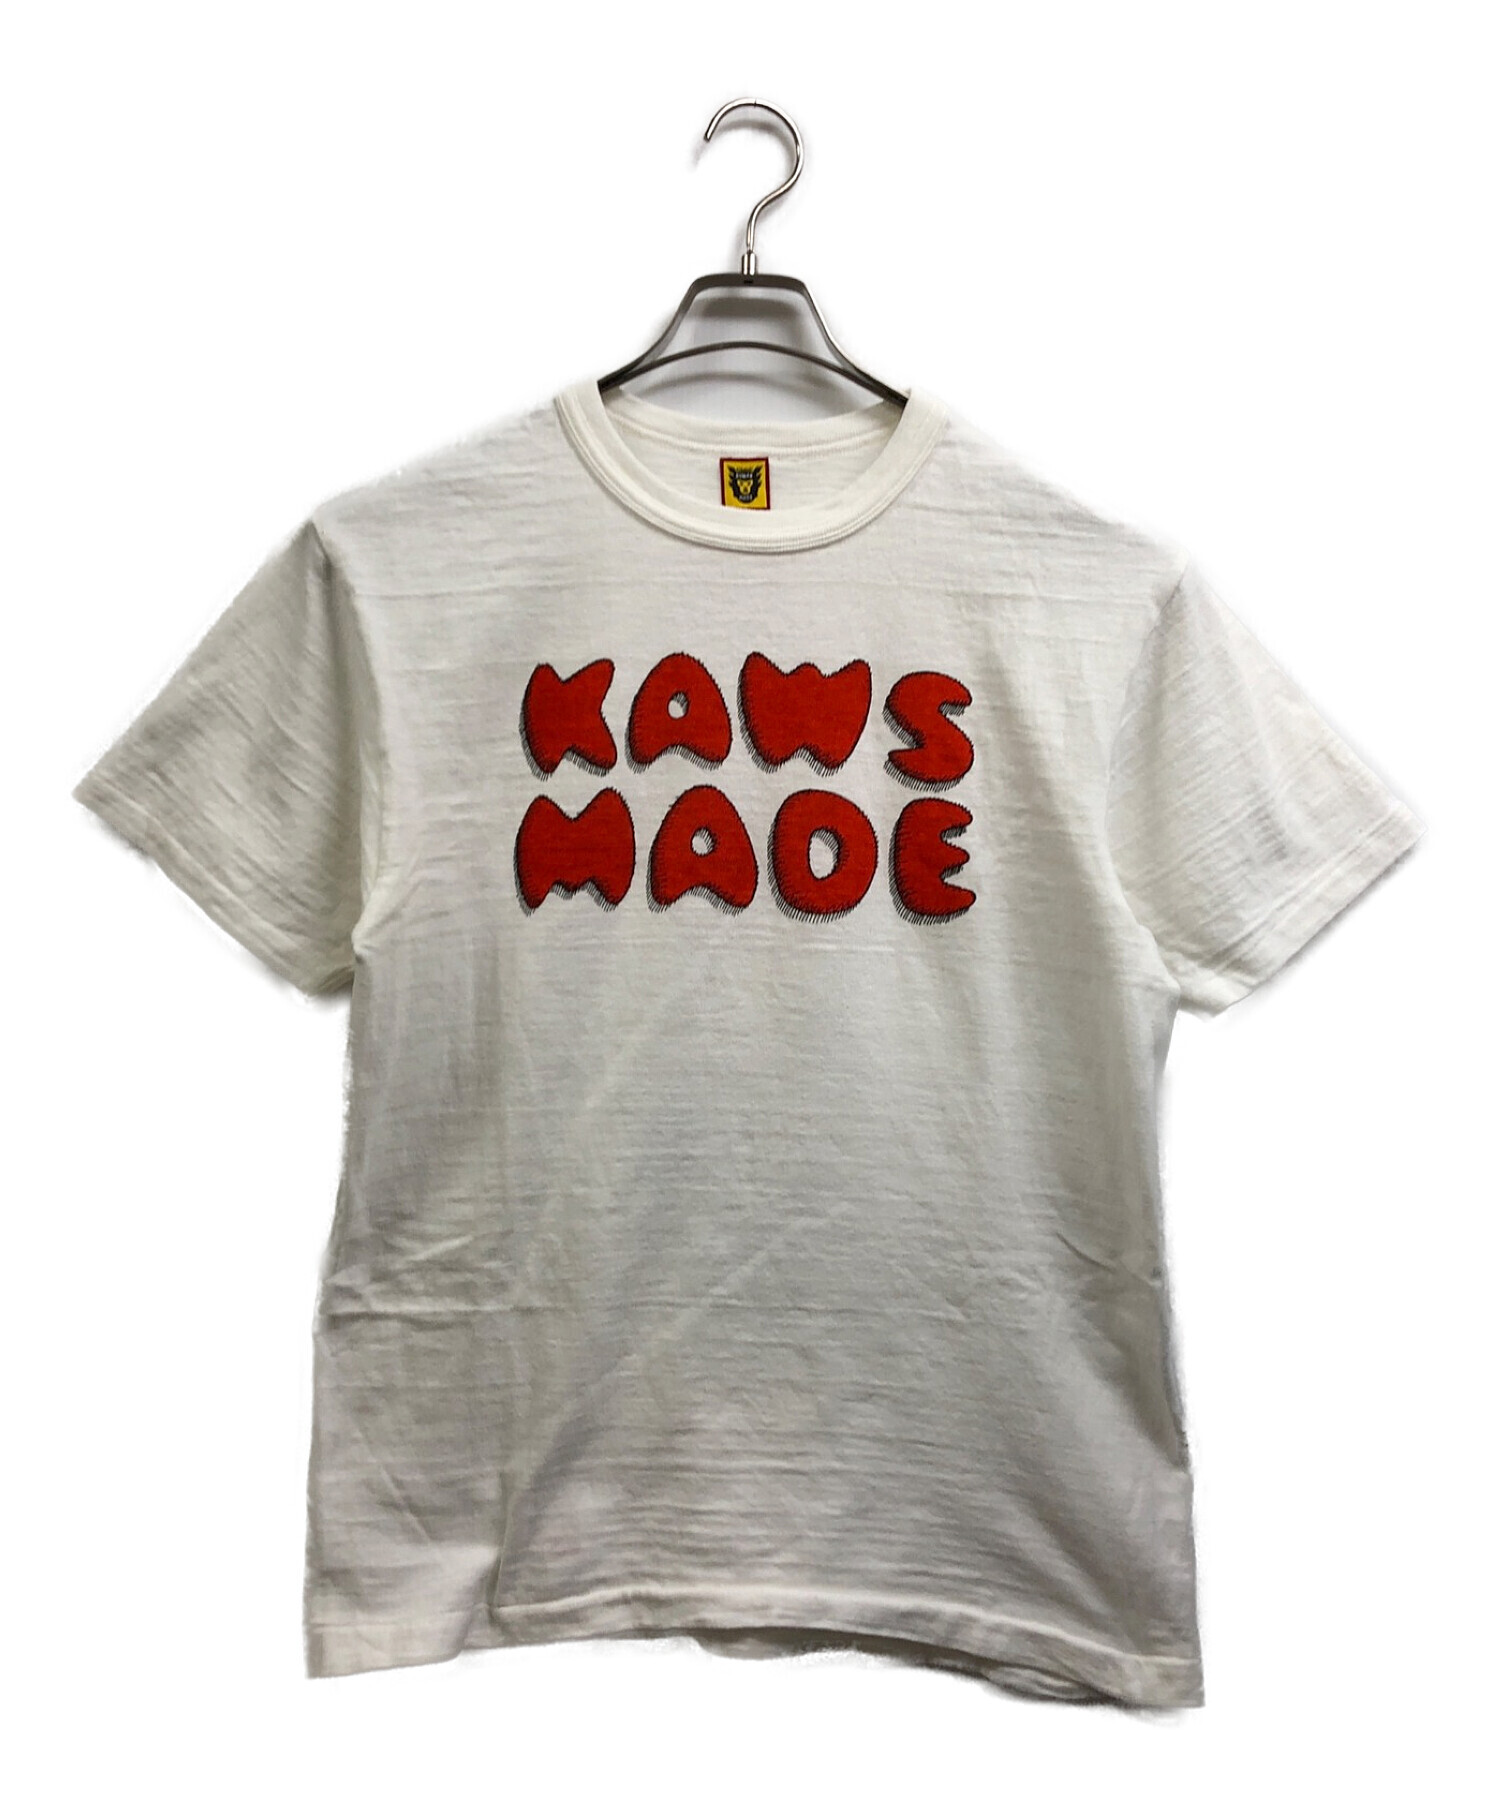 HUMAN MADE (ヒューマンメイド) KAWS (カウズ) KAWS MADE Tシャツ ホワイト サイズ:M